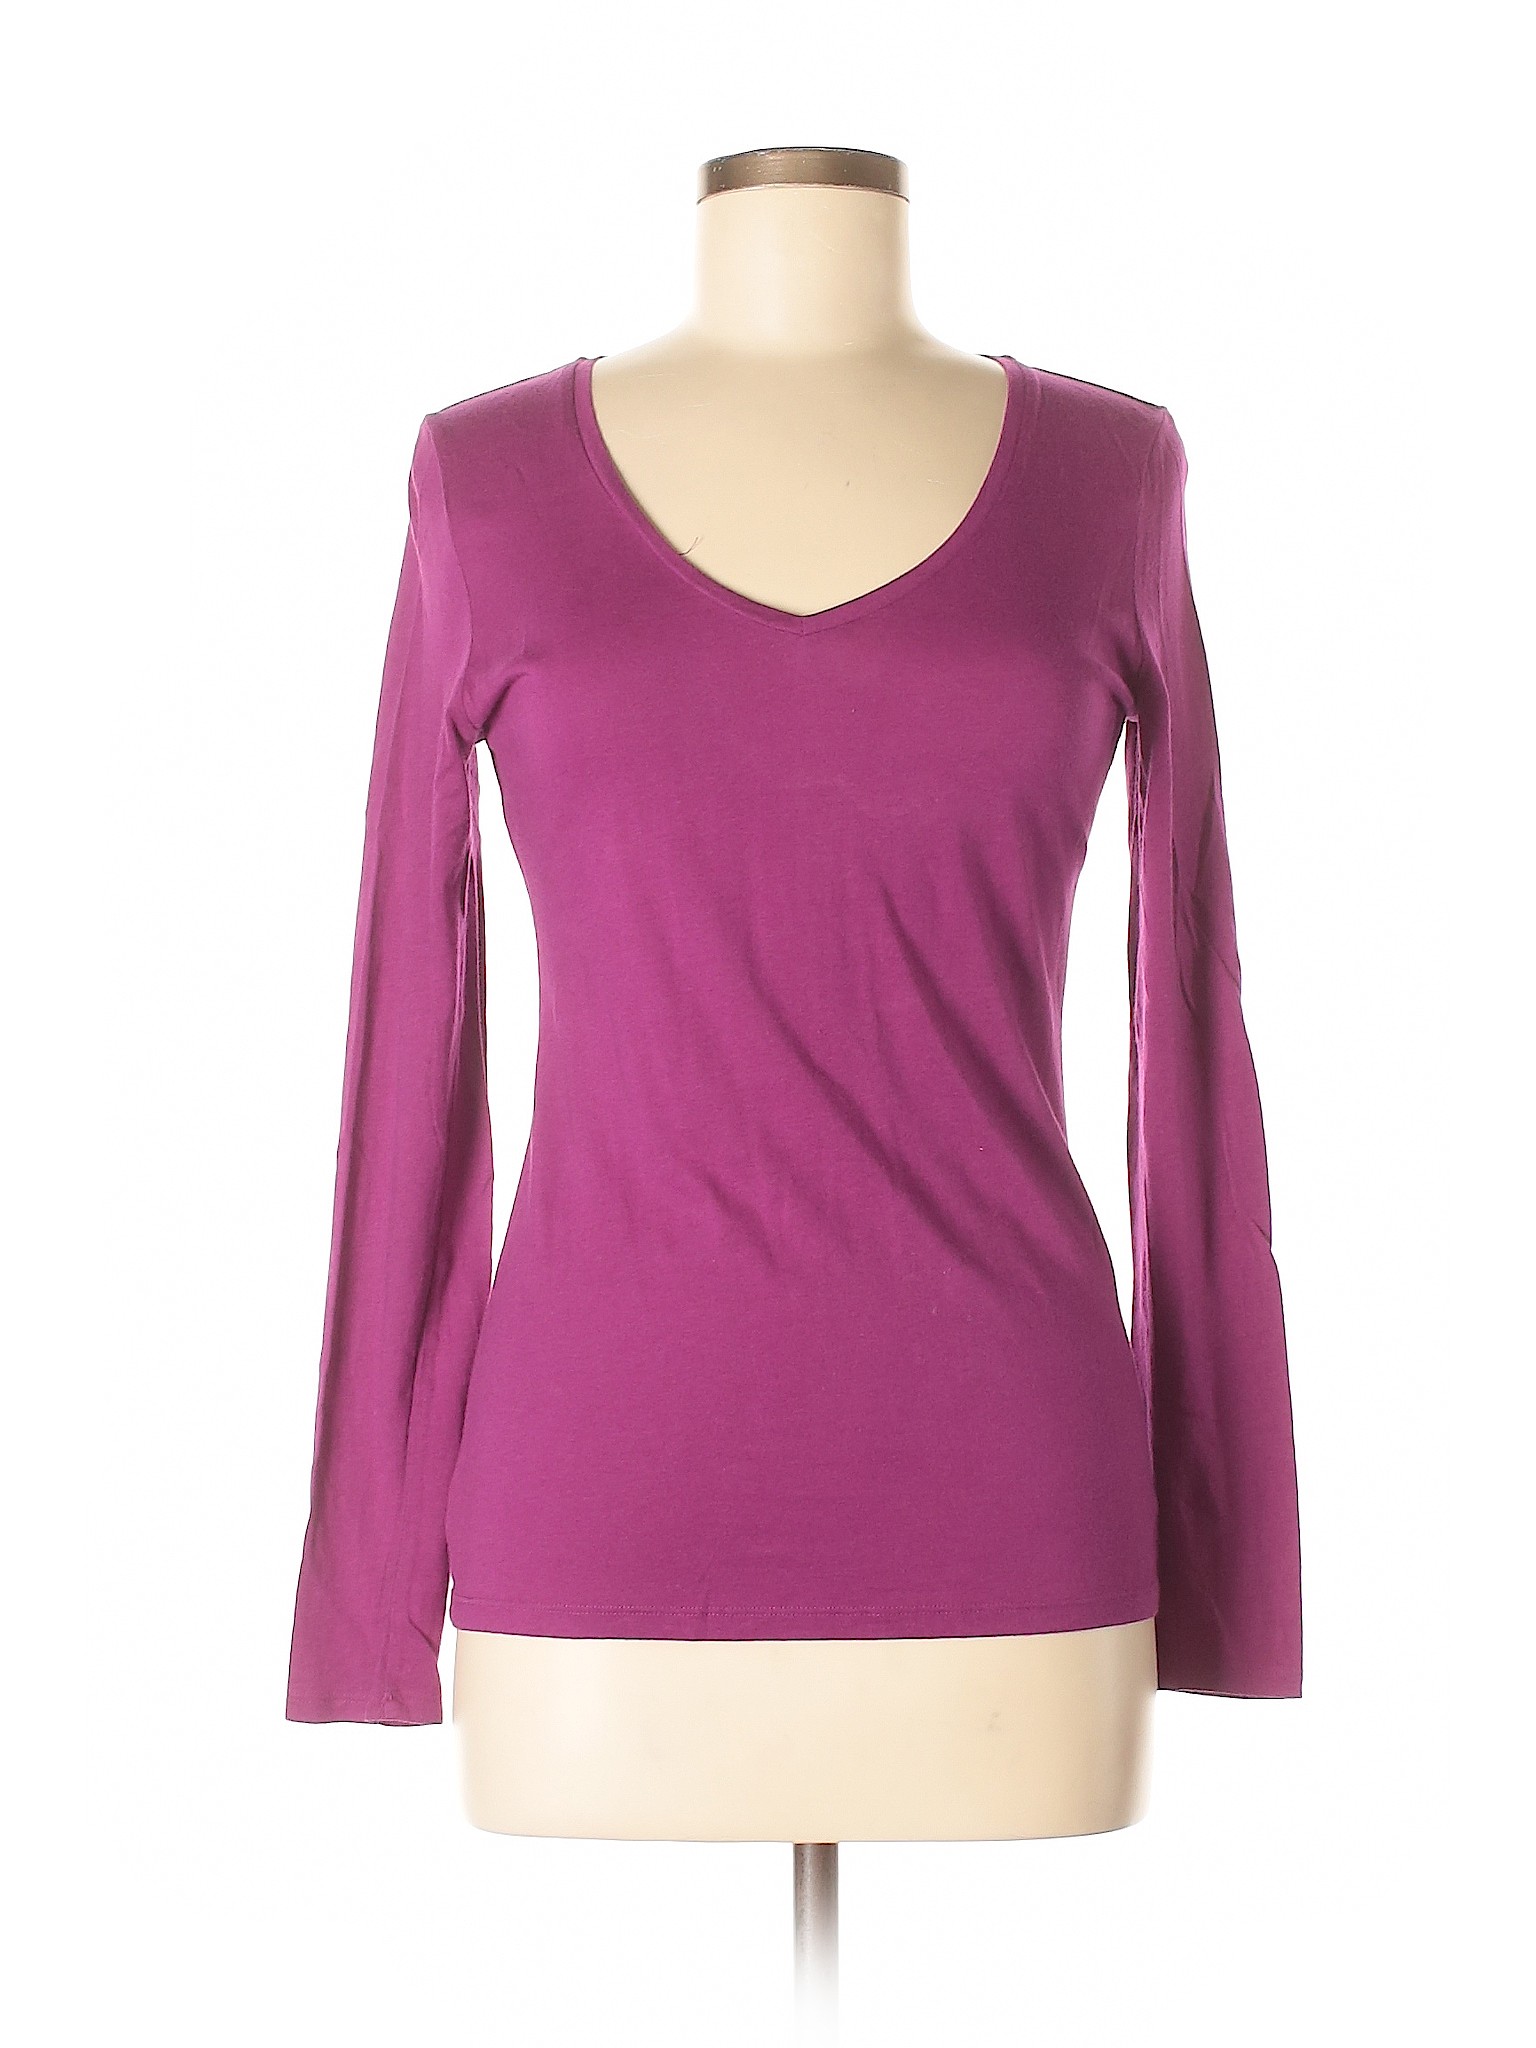 Ann Taylor Women Purple Long Sleeve T-Shirt S | eBay